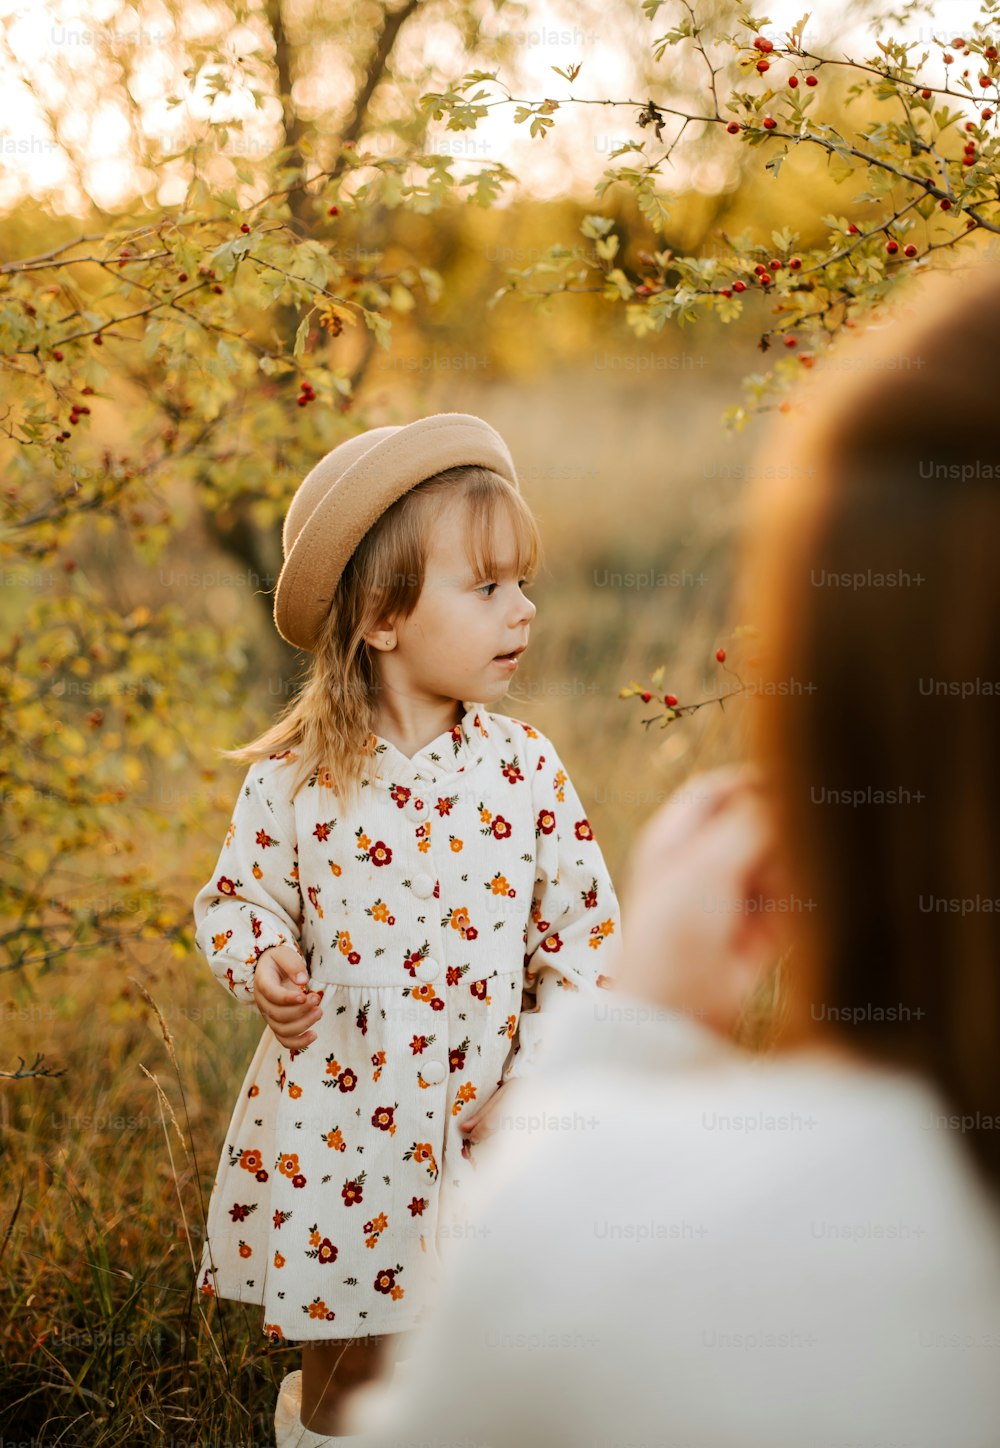 a little girl wearing a hat standing in a field